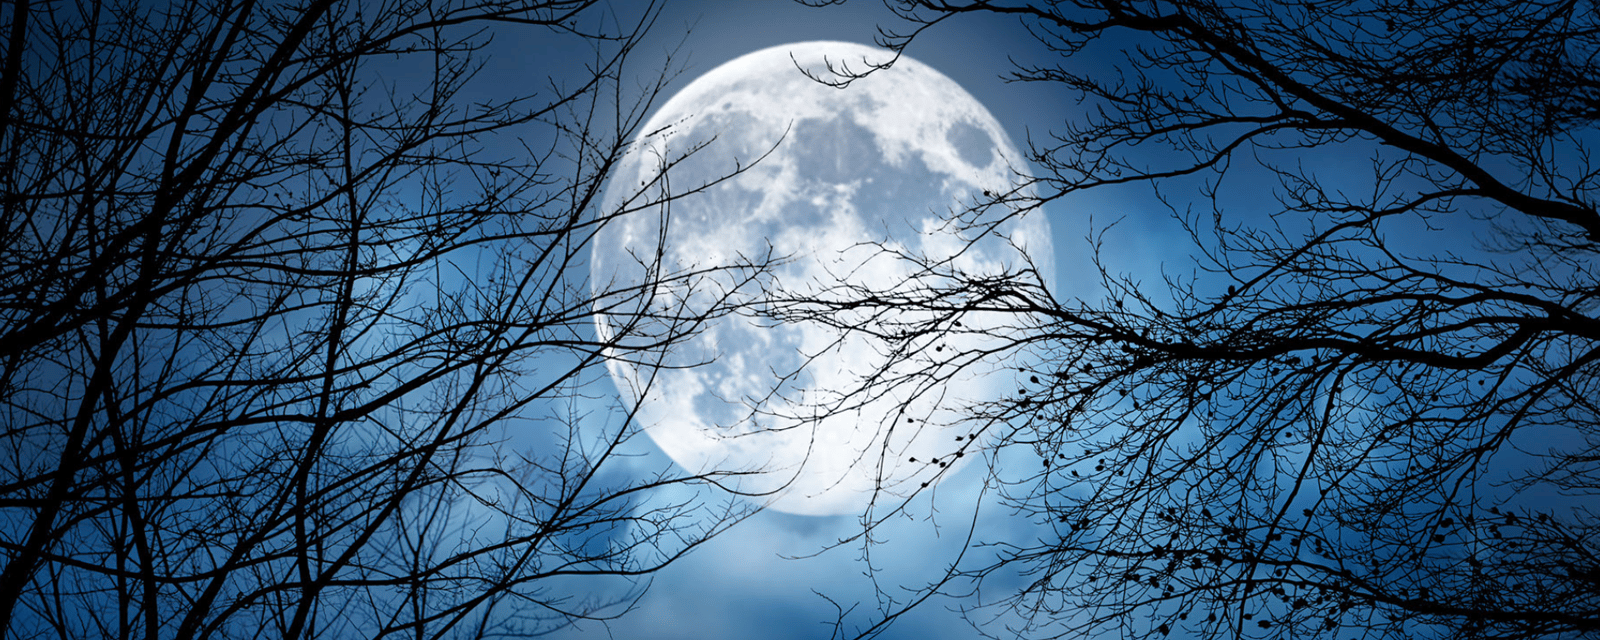 Après une Pleine Lune particulièrement intense, ses effets néfastes se font encore ressentir aujourd'hui